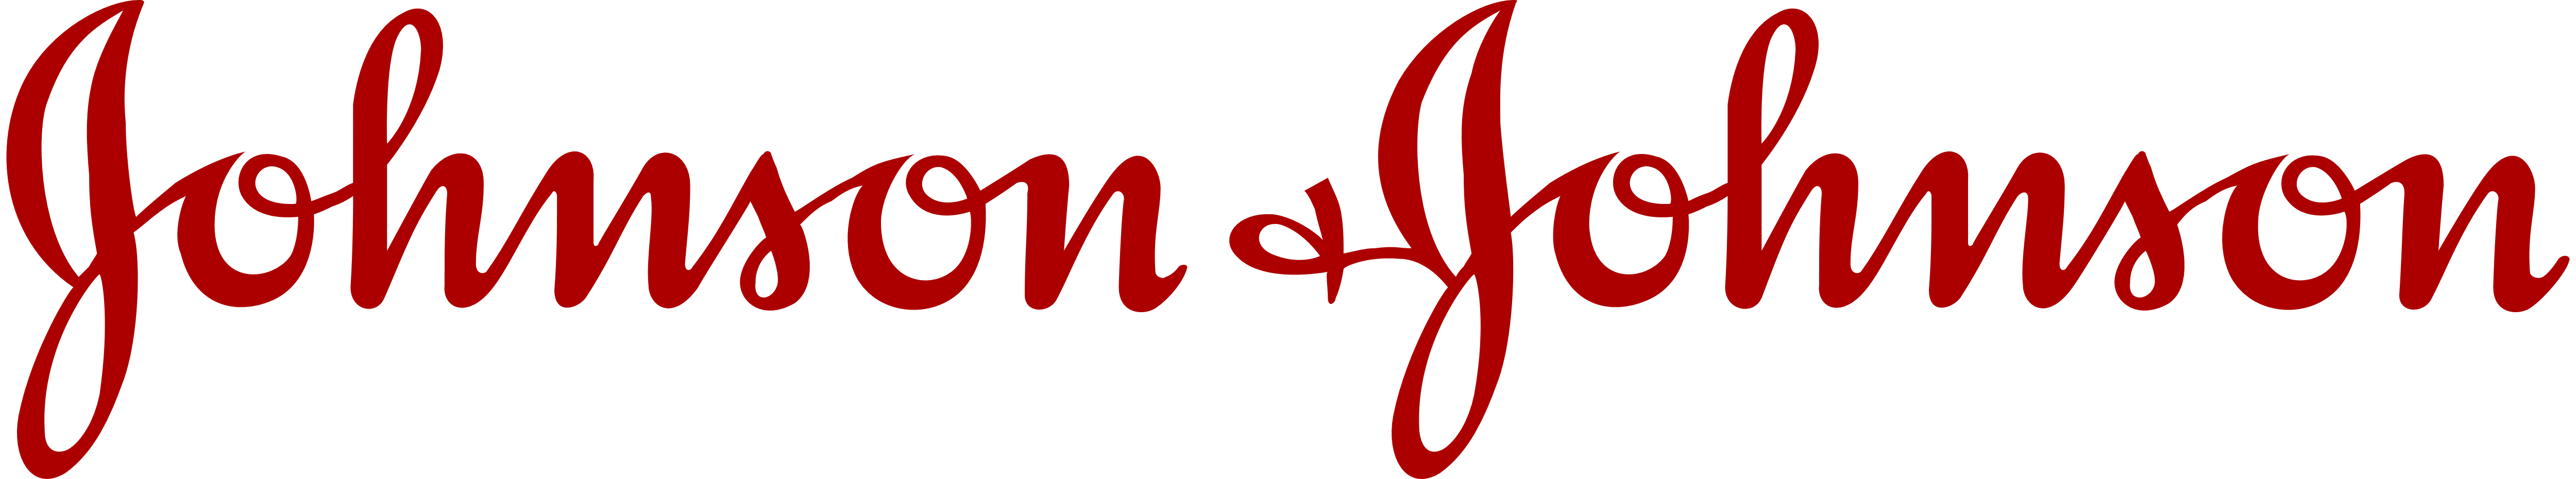 J&J_logo